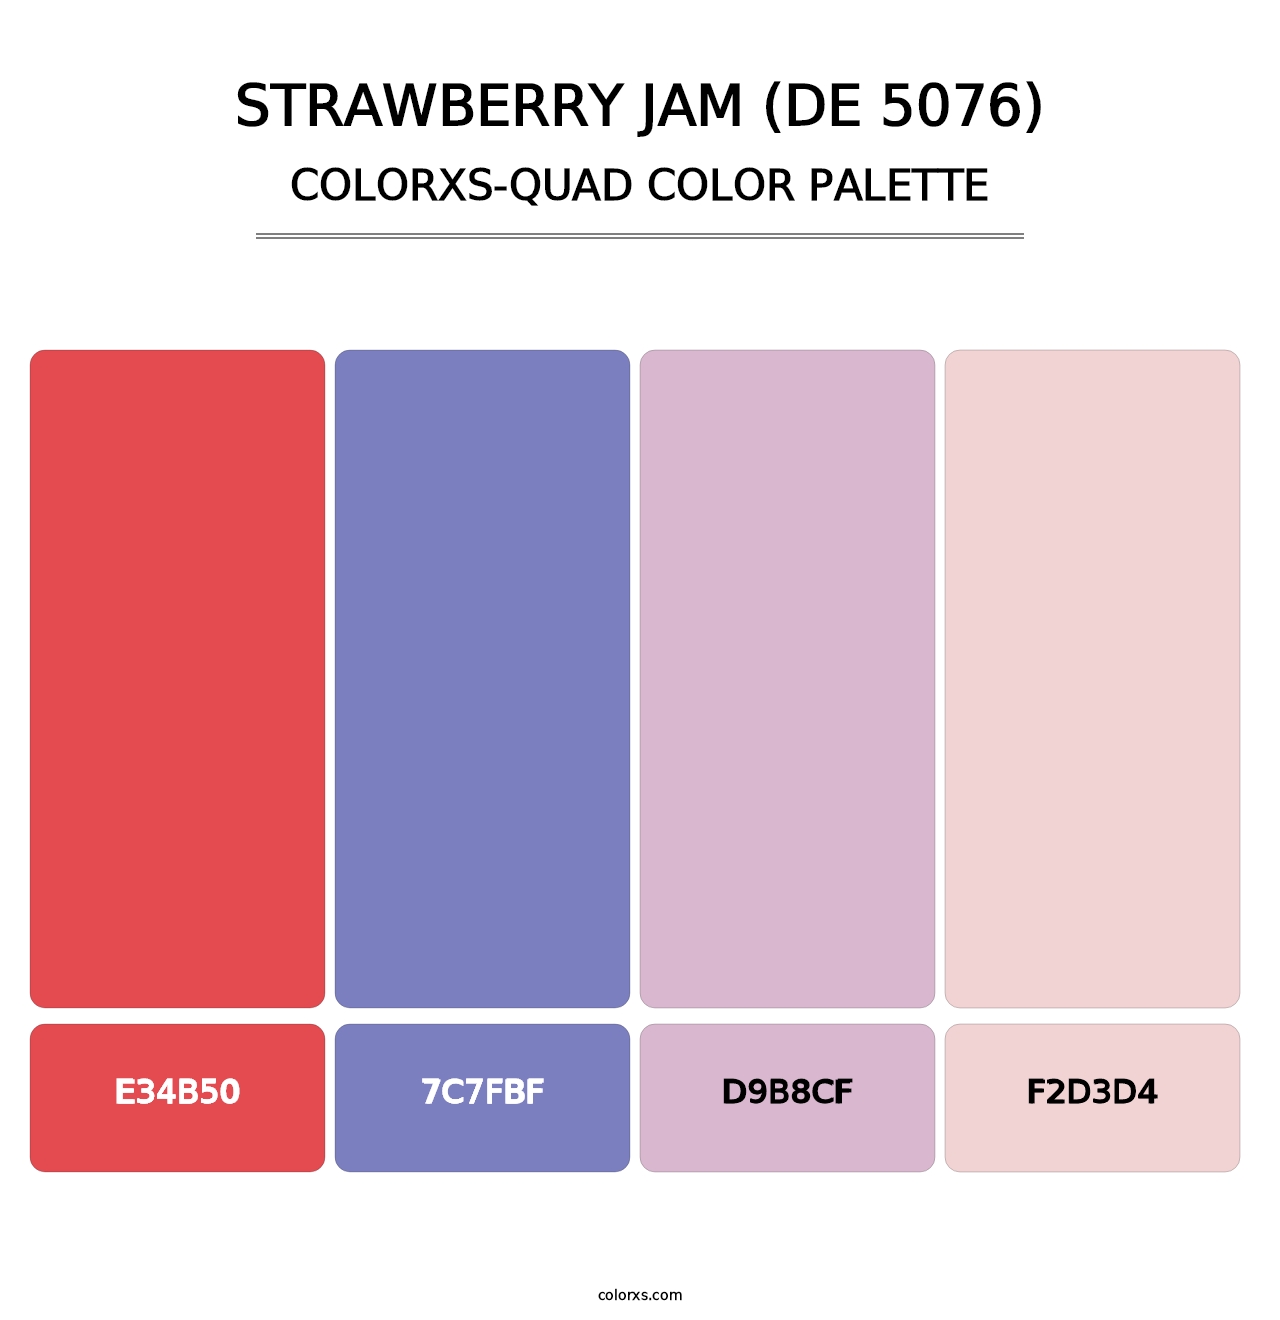 Strawberry Jam (DE 5076) - Colorxs Quad Palette